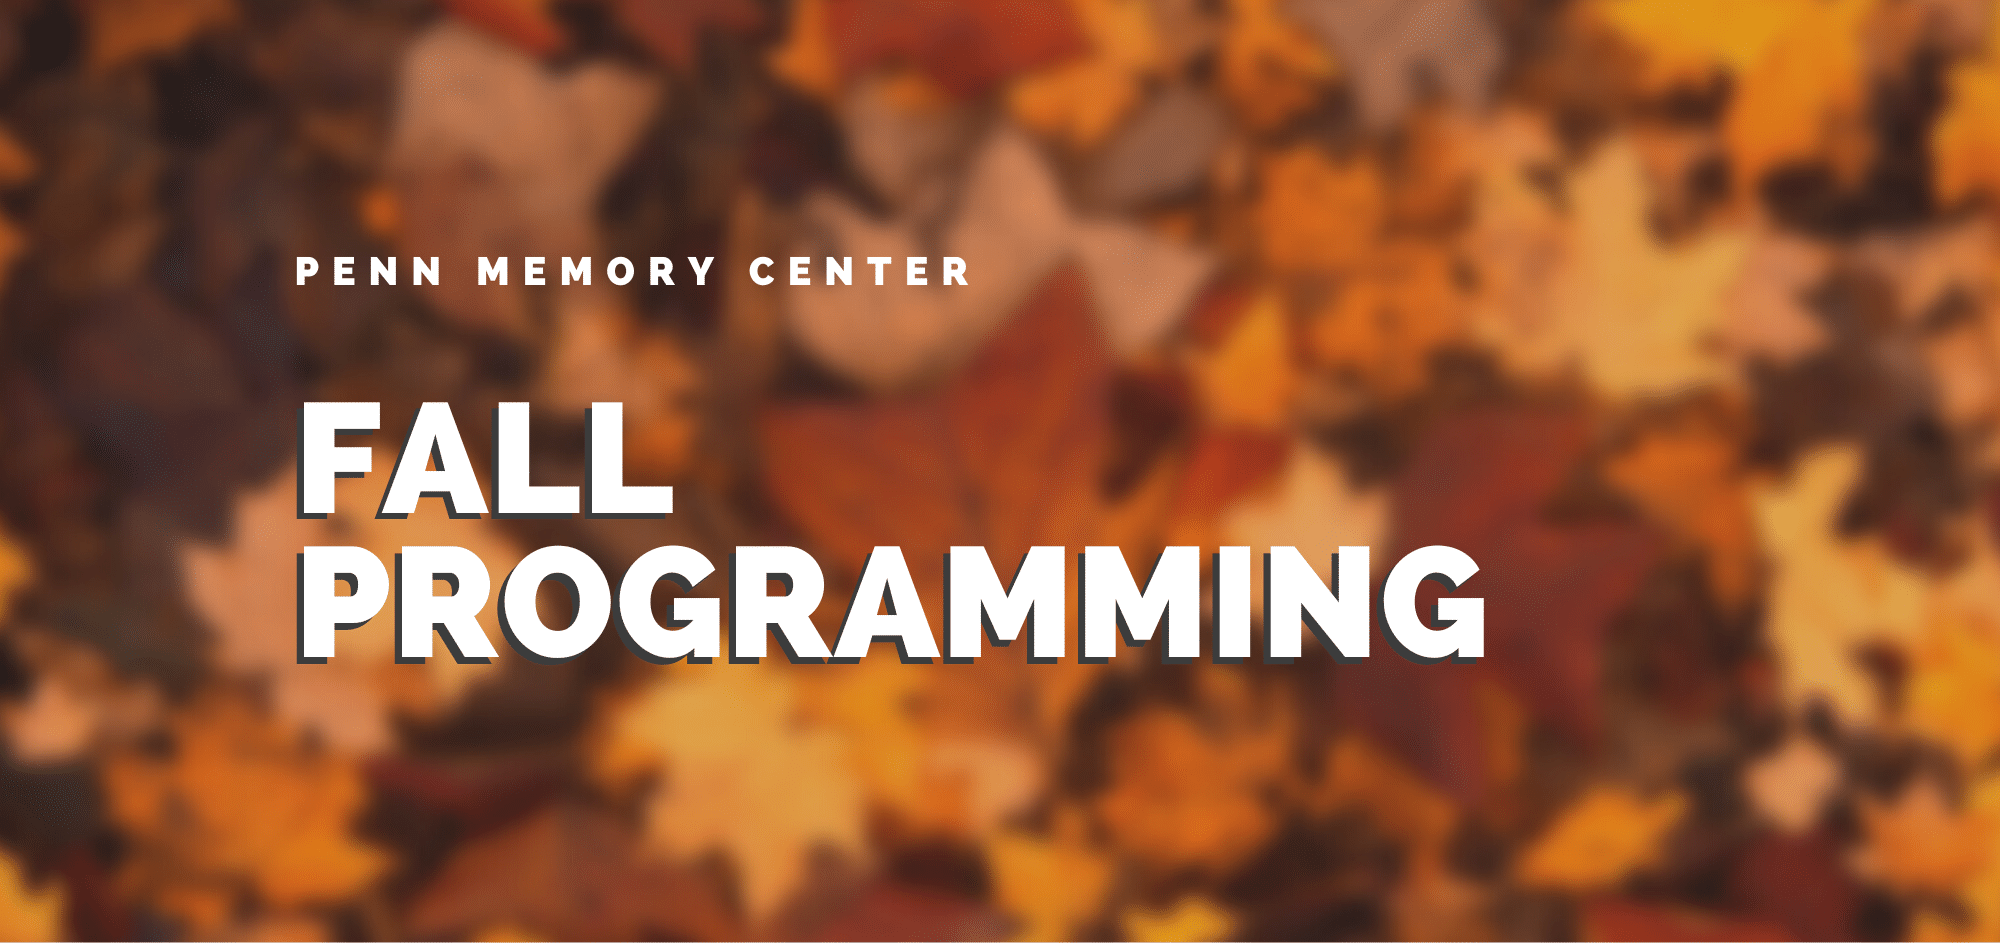 Penn Memory Center Fall Programming